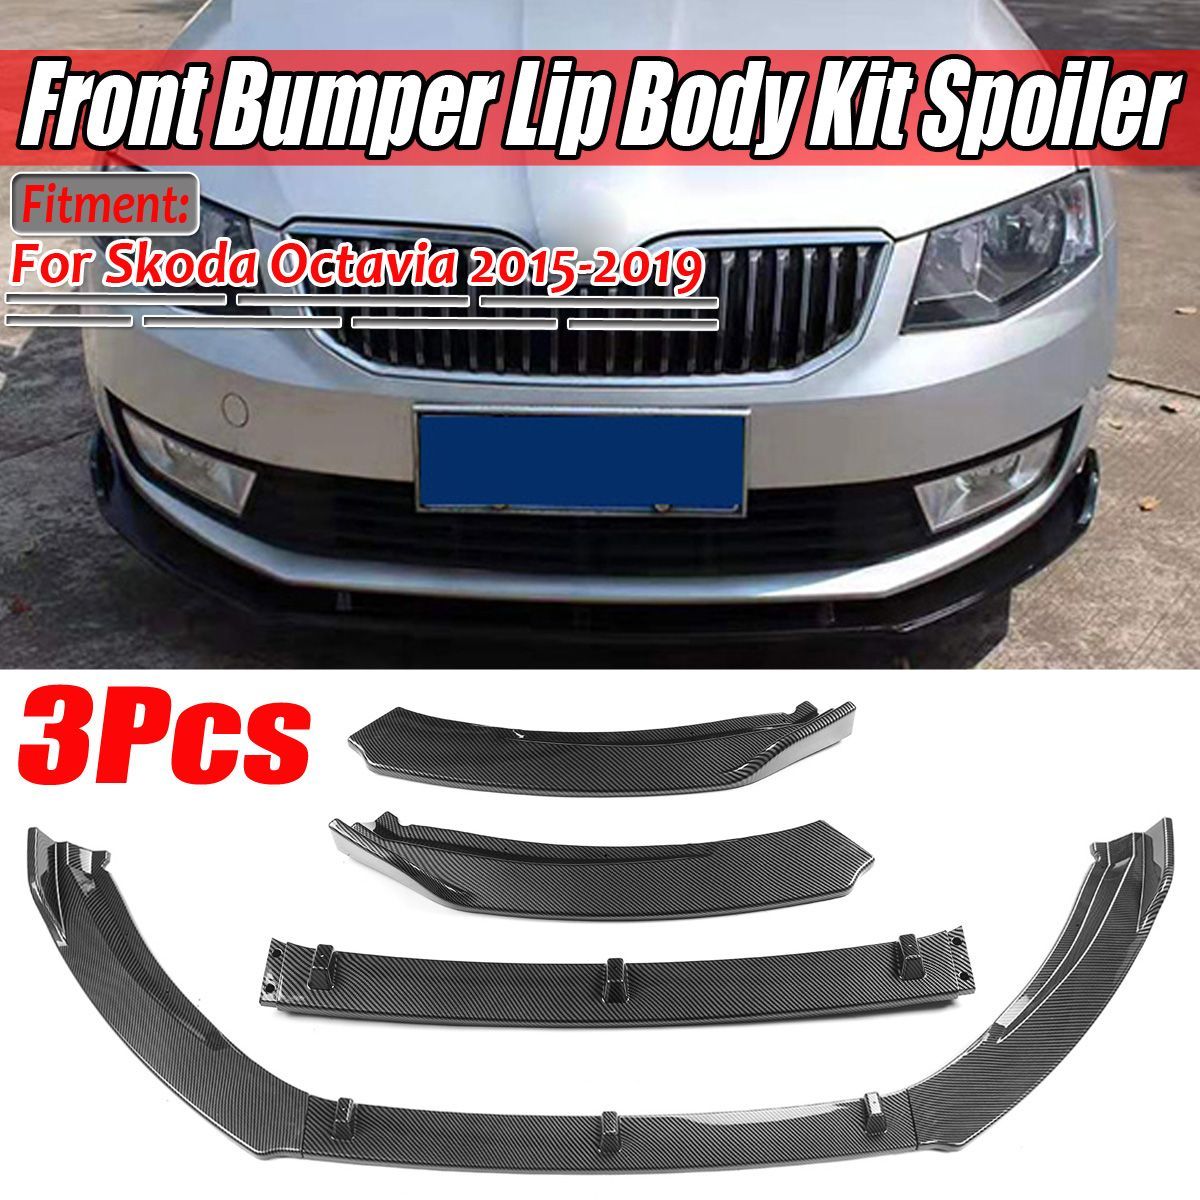 Carbon-Fiber-Look-Front-Bumper-Lip-Spoiler-Cover-Trim-3PCS-For-Skoda-Octavia-2015-2019-1656188